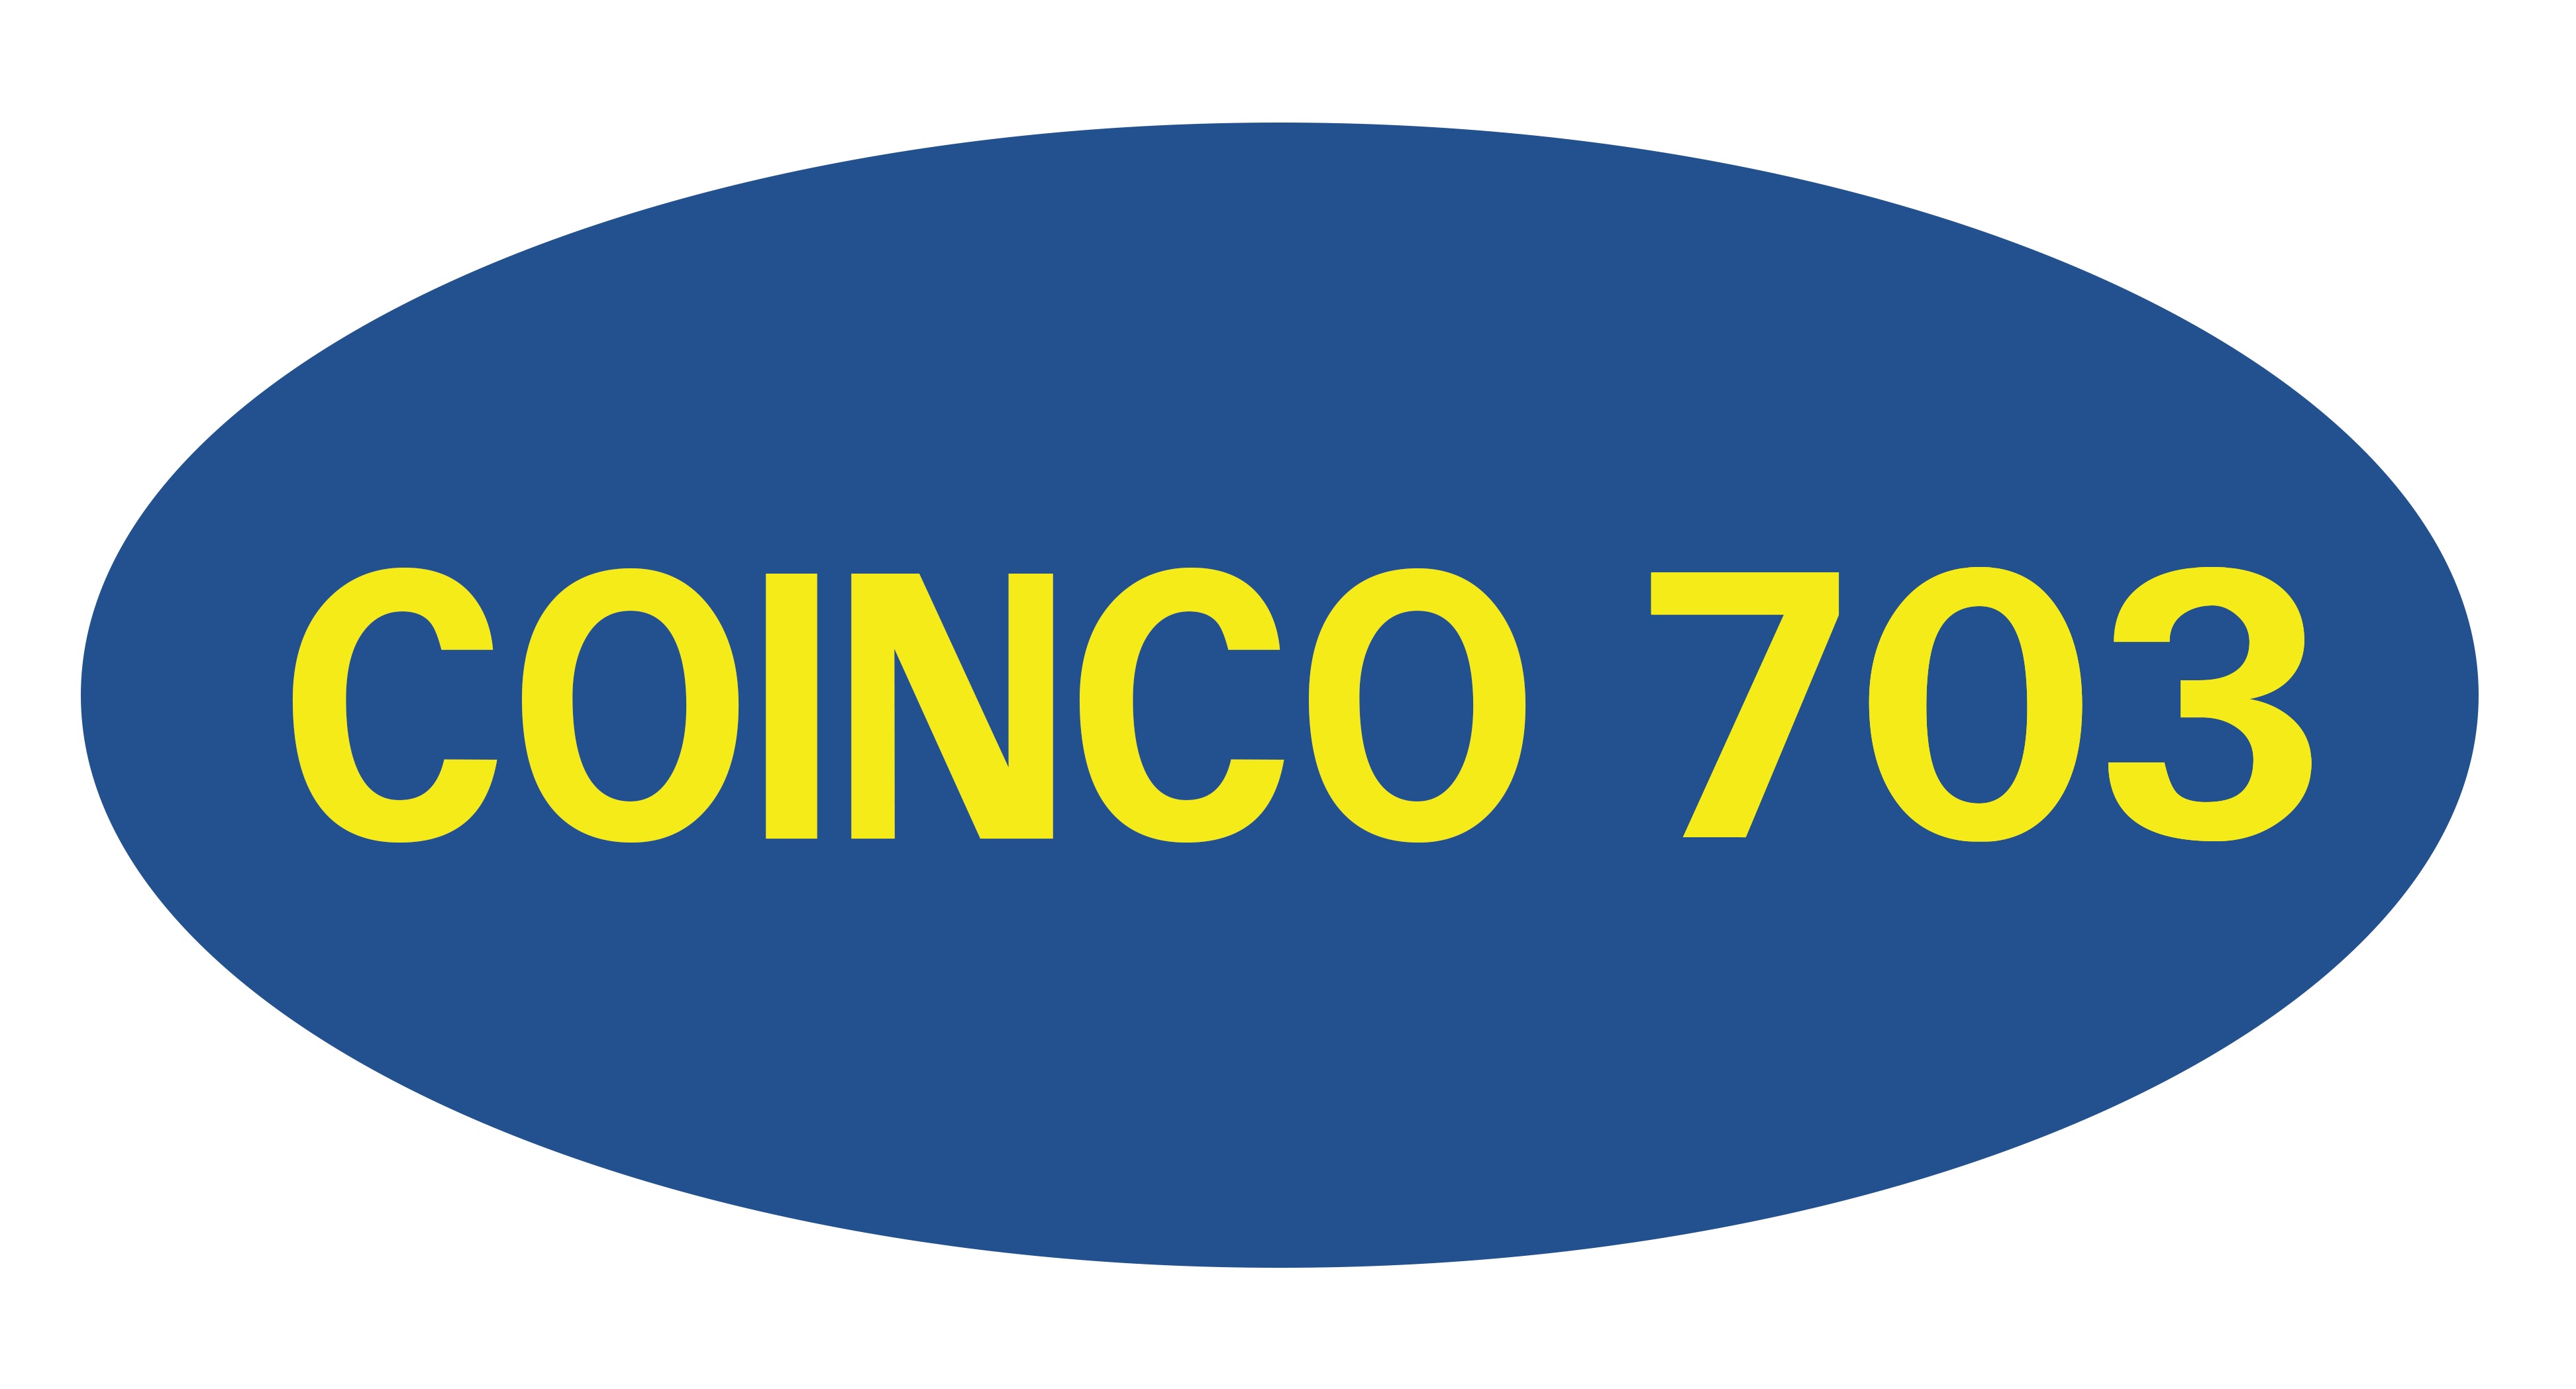 Coinco703